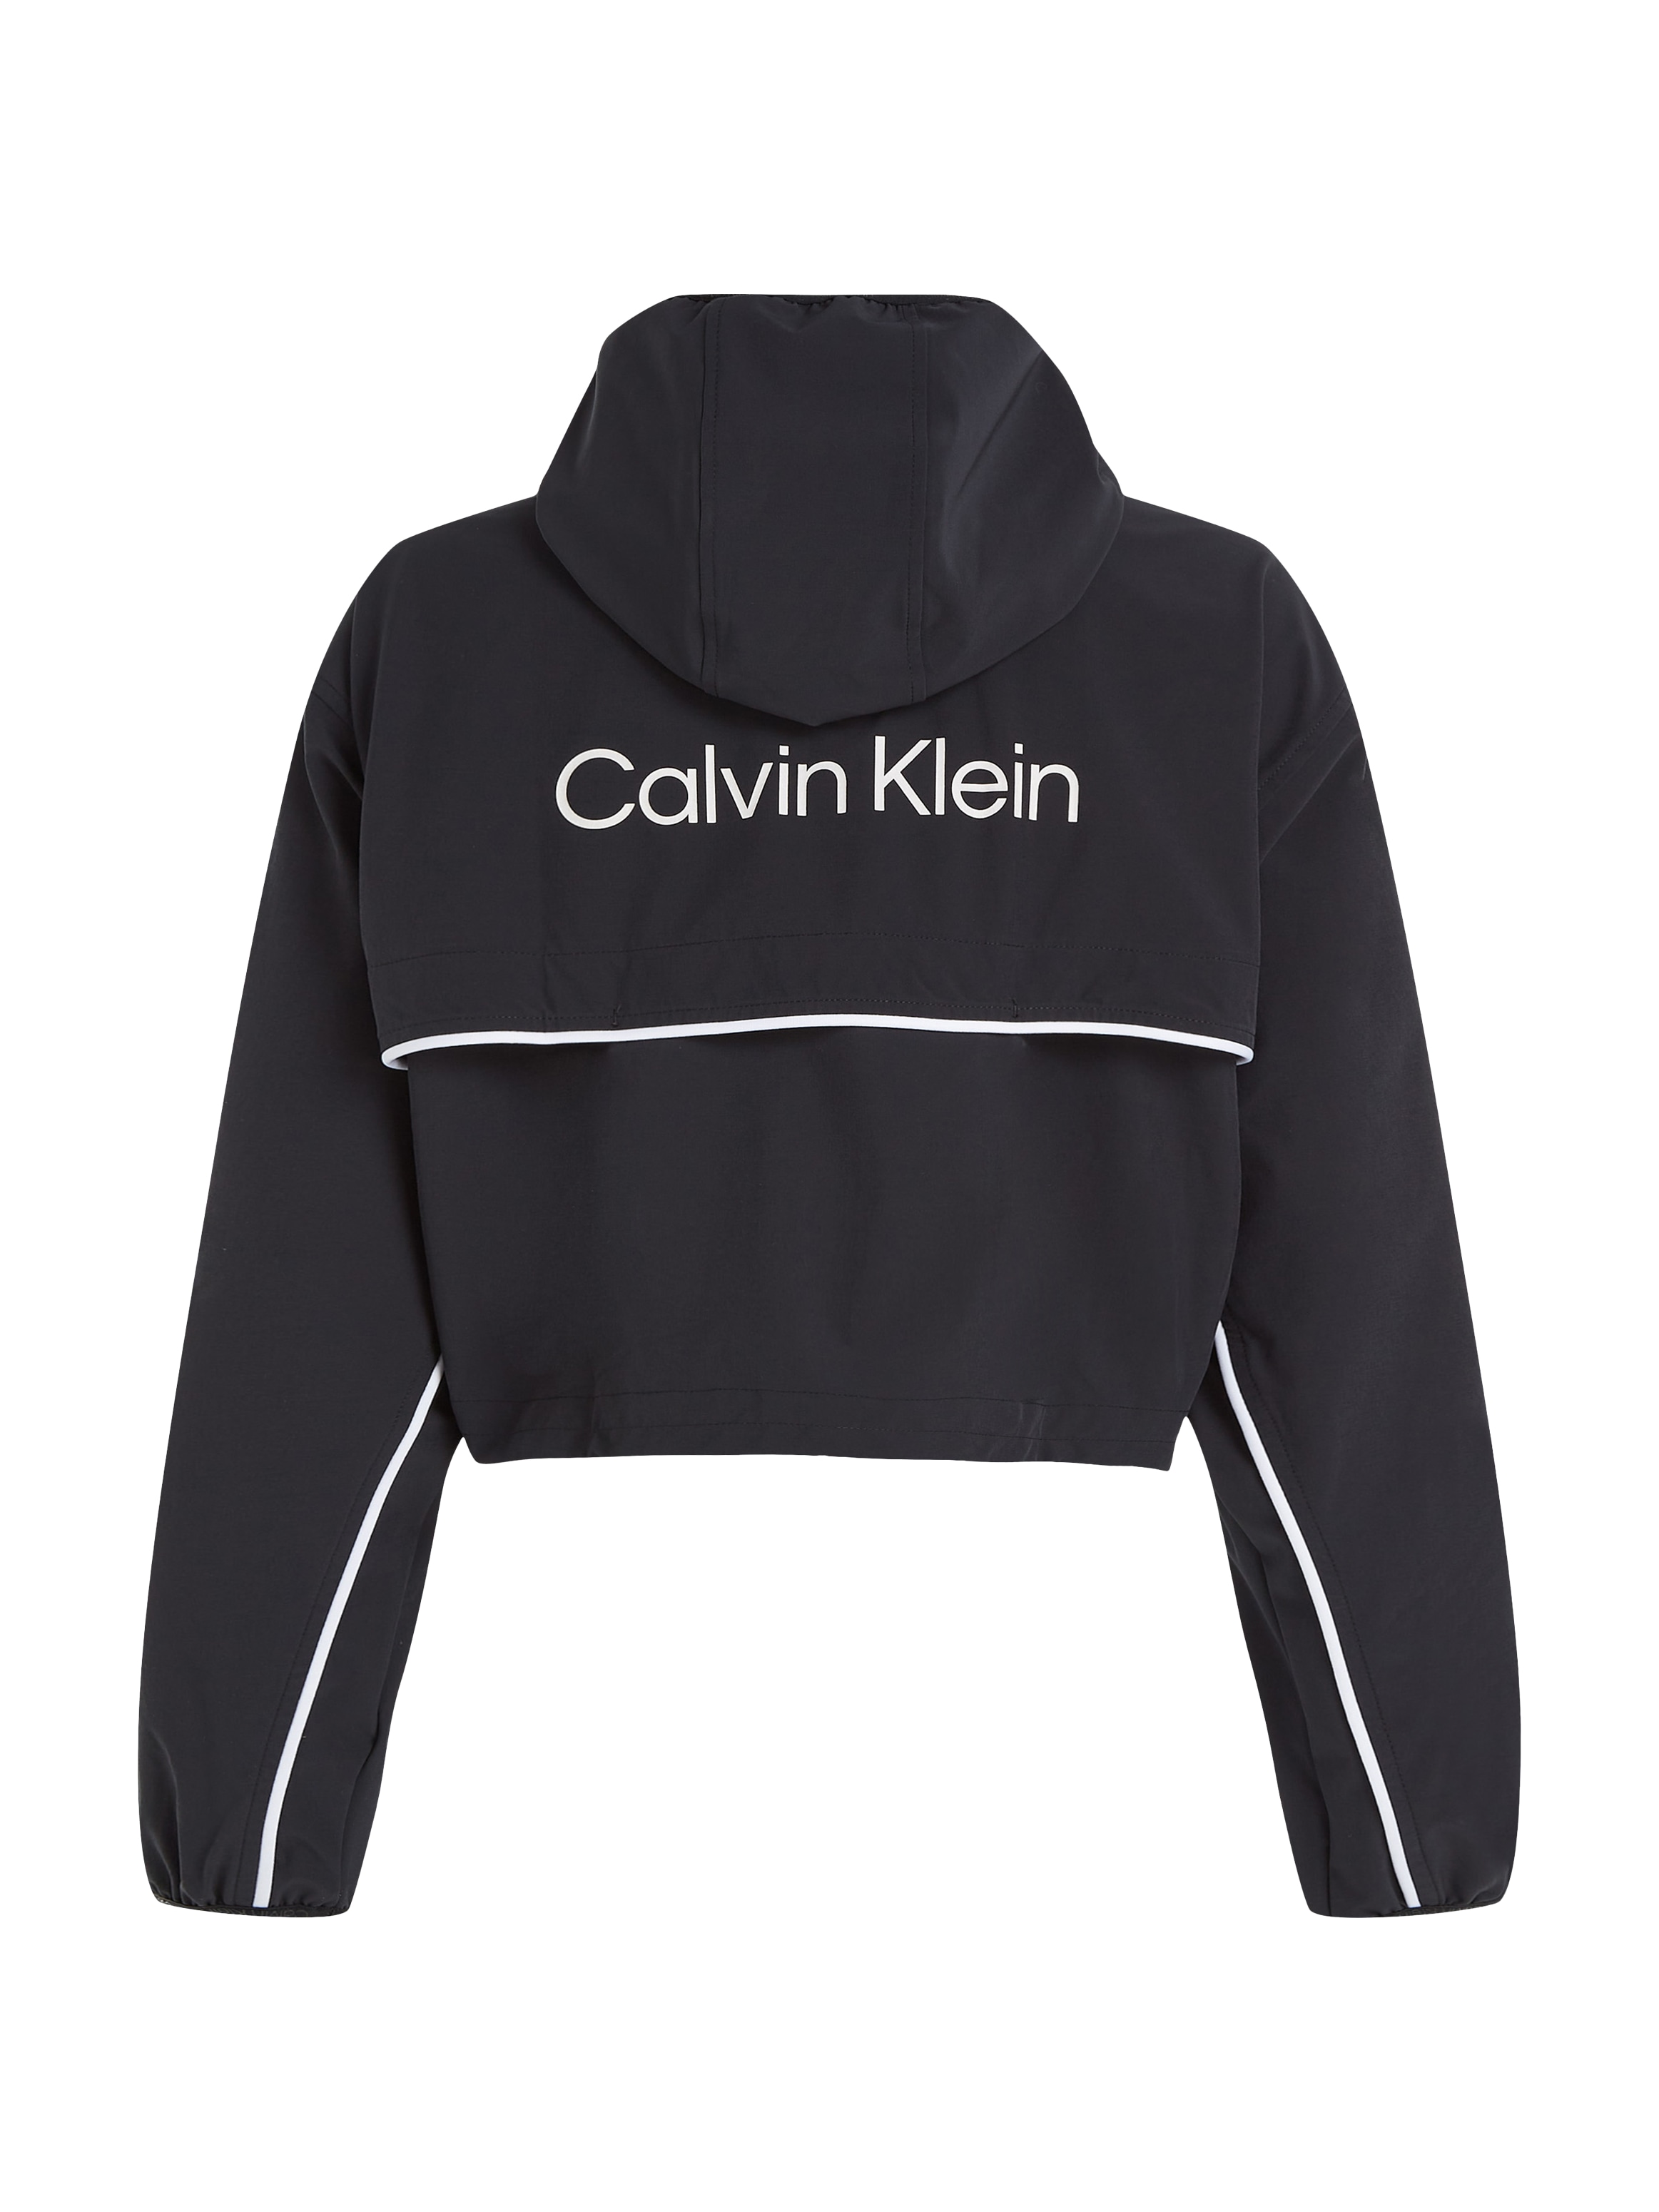 Calvin Klein Sport Windbreaker für »PW BAUR bestellen mit | - Kapuze Windjacket«